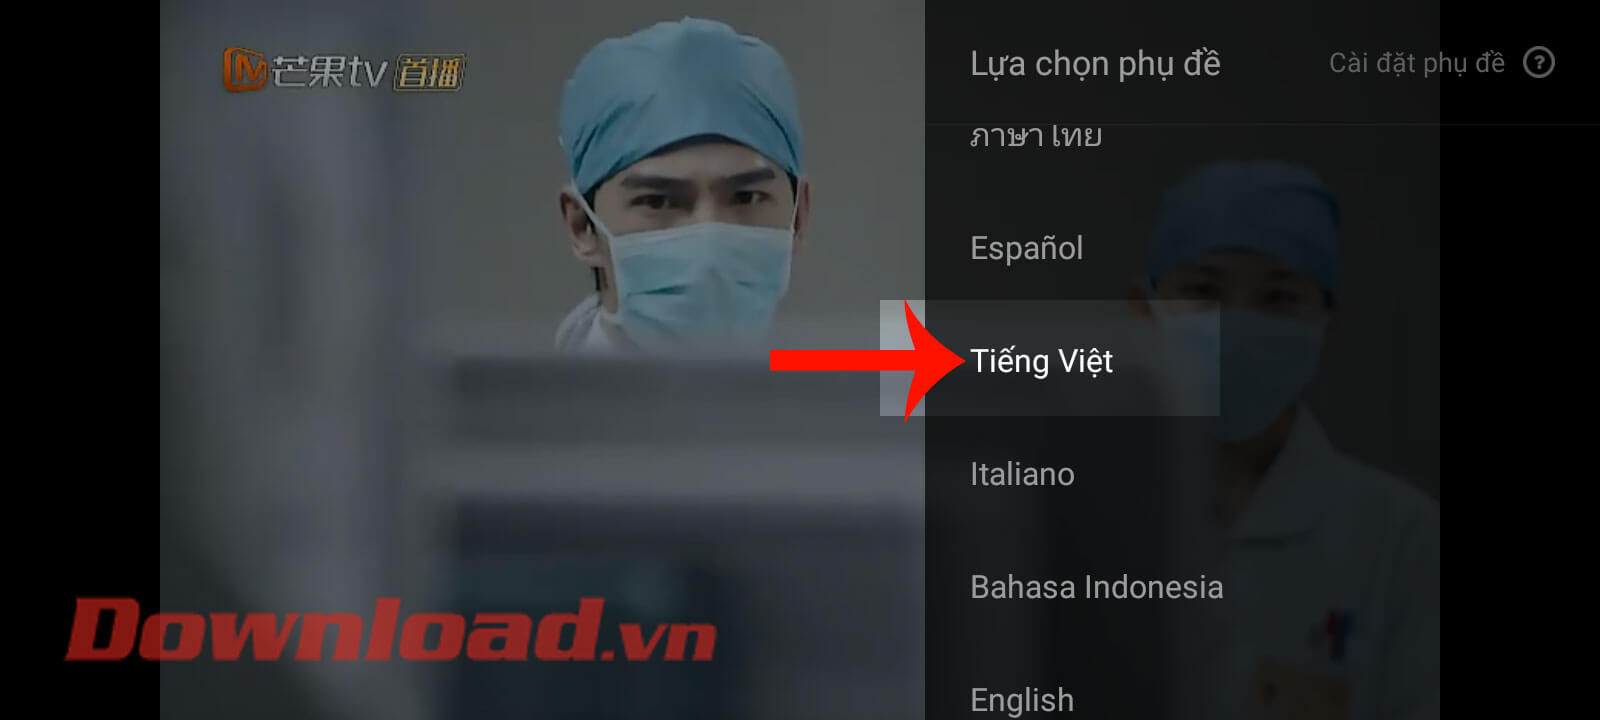 Chọn ngôn ngữ Tiếng Việt